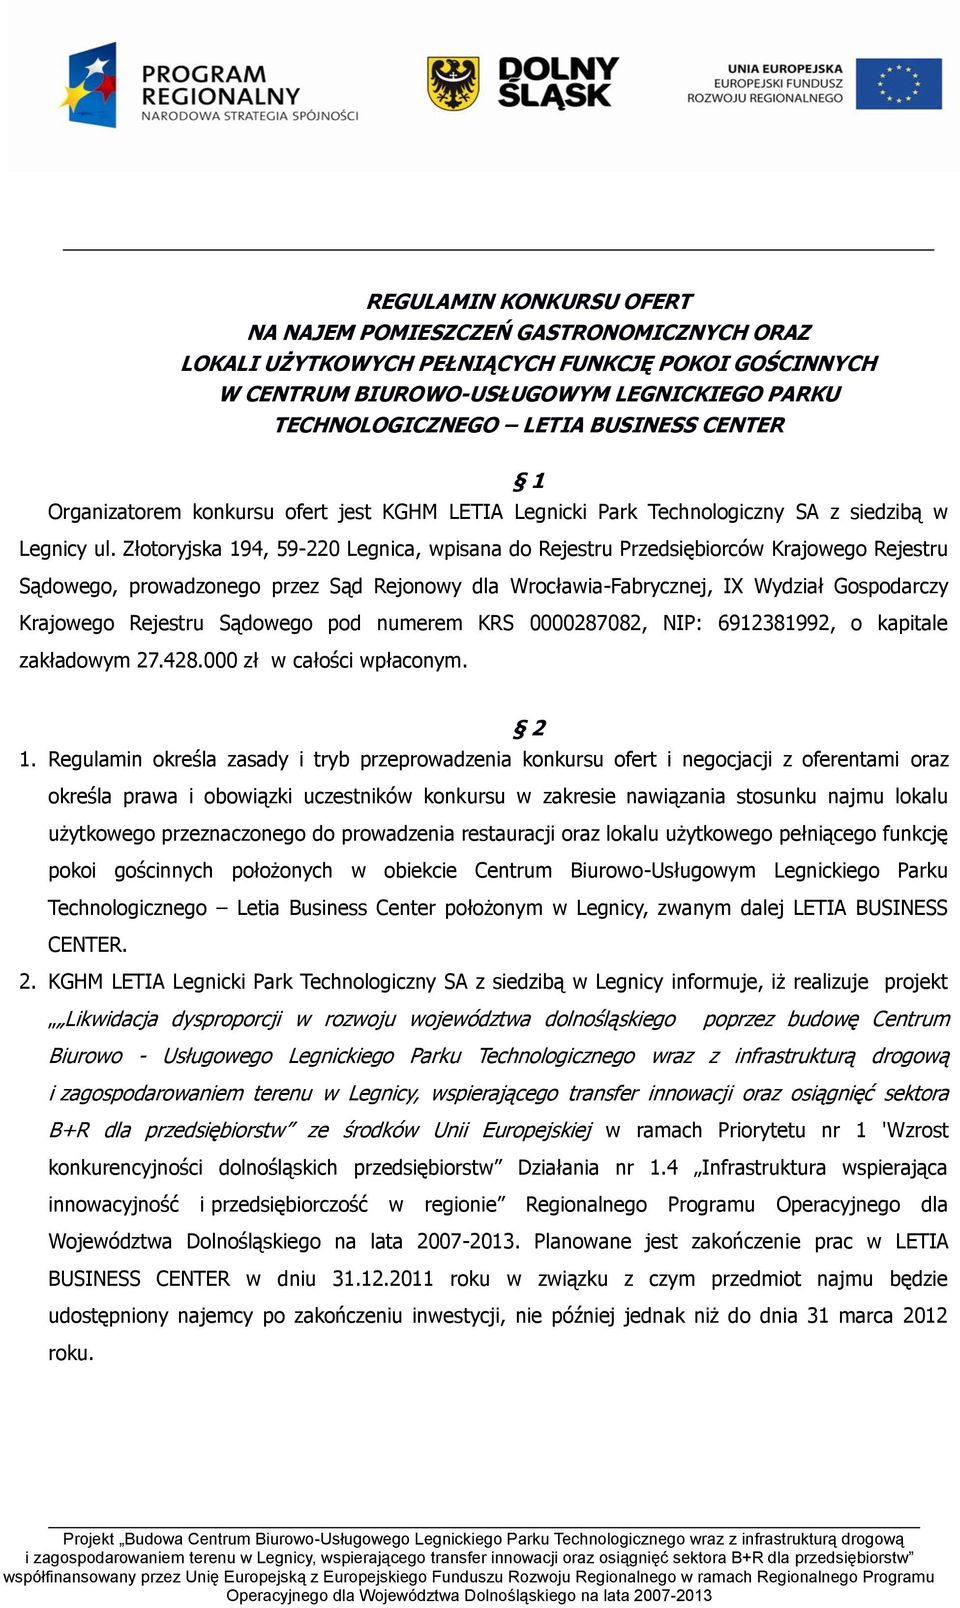 Złotoryjska 194, 59-220 Legnica, wpisana do Rejestru Przedsiębiorców Krajowego Rejestru Sądowego, prowadzonego przez Sąd Rejonowy dla Wrocławia-Fabrycznej, IX Wydział Gospodarczy Krajowego Rejestru